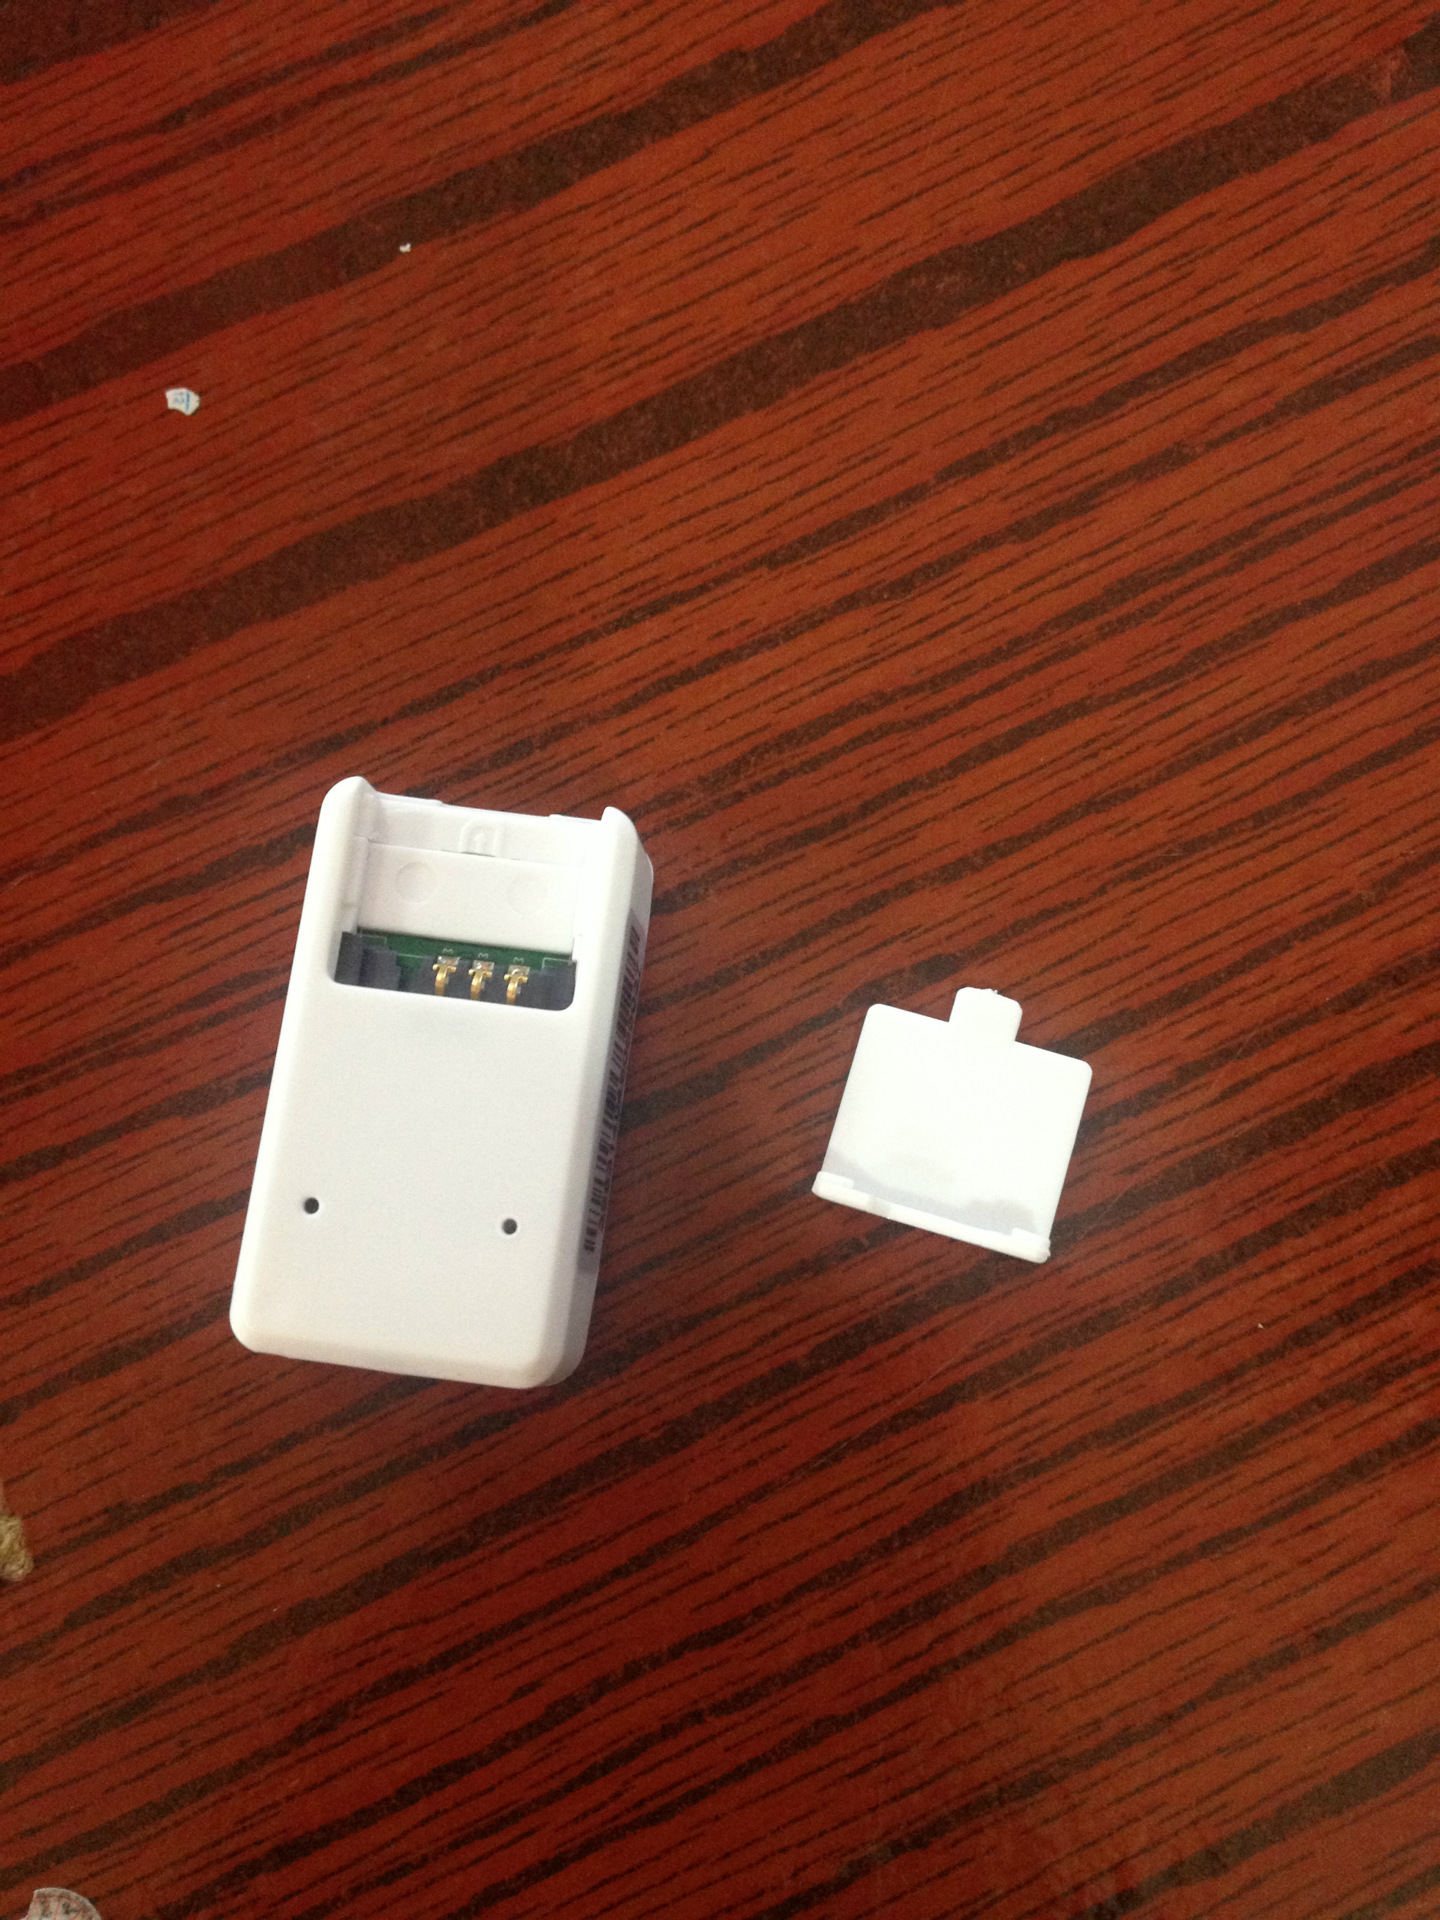 厂家直销cx-01b微型gps定位器 个人微型追踪 跟踪 老人儿童防丢器